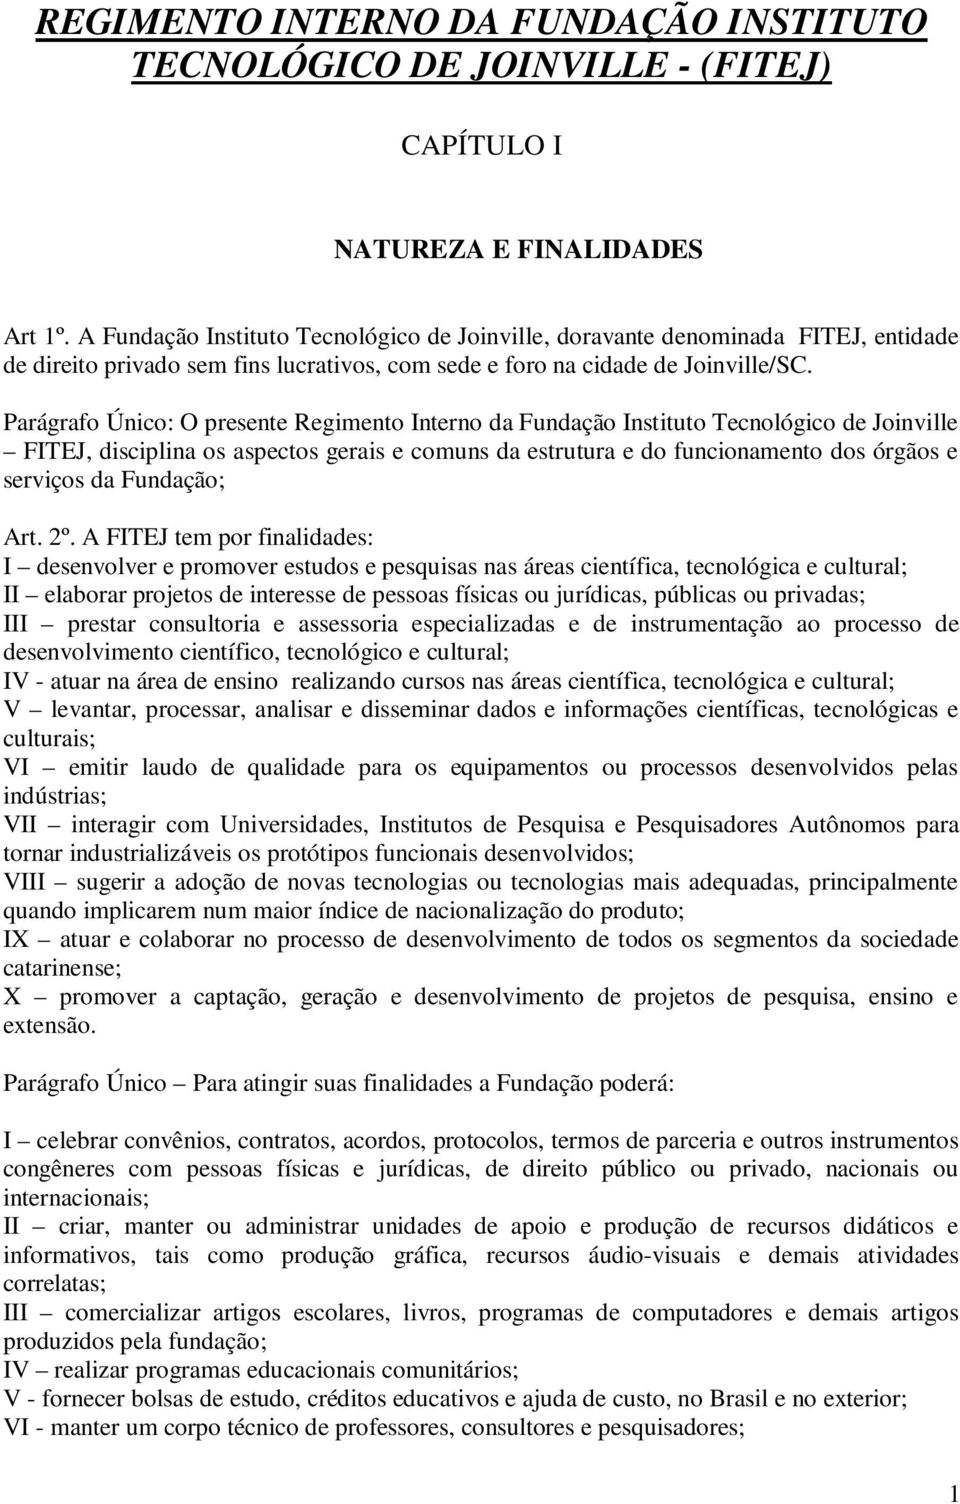 Parágrafo Único: O presente Regimento Interno da Fundação Instituto Tecnológico de Joinville FITEJ, disciplina os aspectos gerais e comuns da estrutura e do funcionamento dos órgãos e serviços da